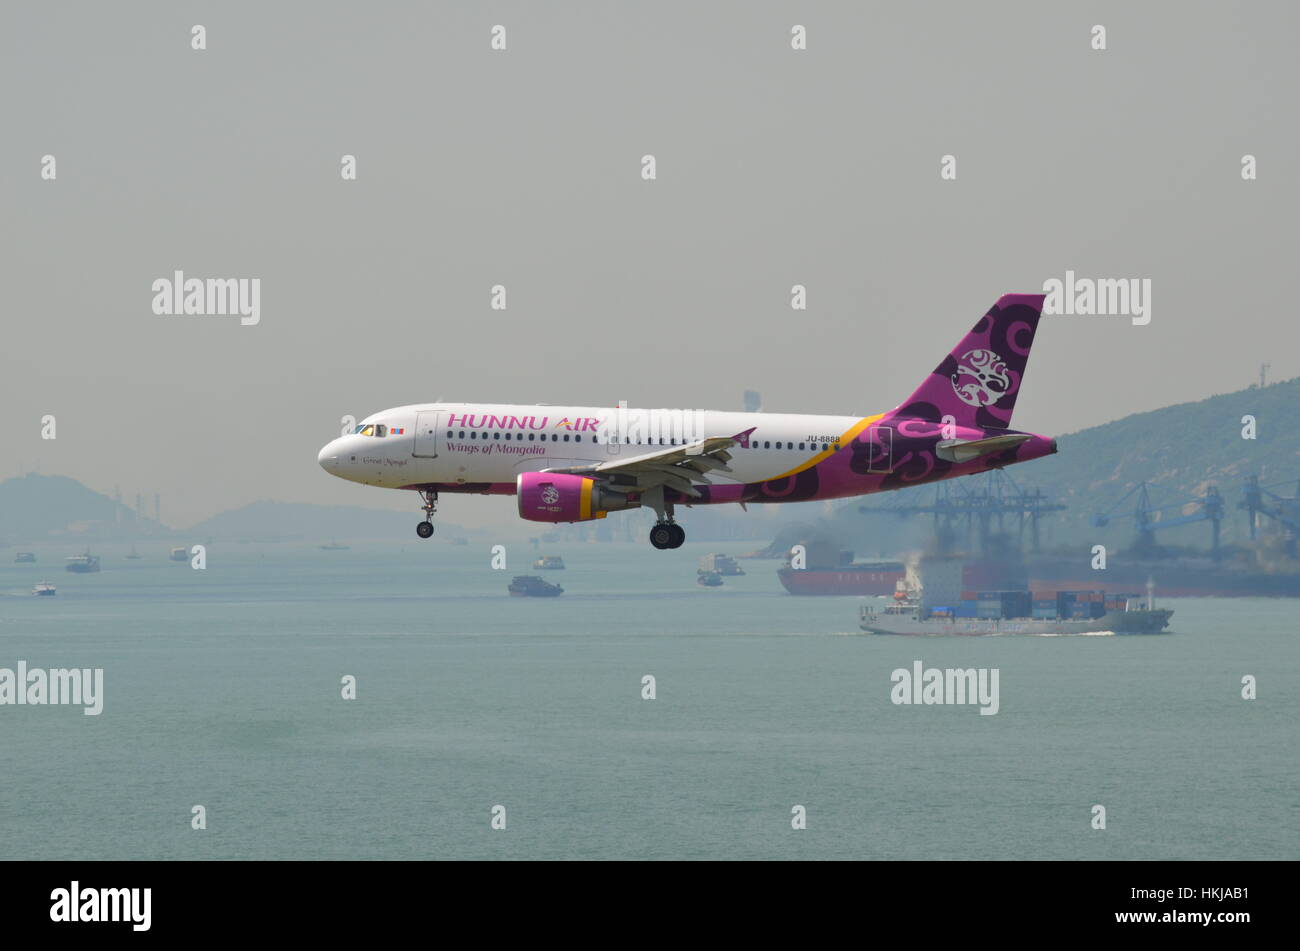 Hunnu Air Airbus A319 JU-8888 Great Mongol landing at Hong Kong International Airport Stock Photo